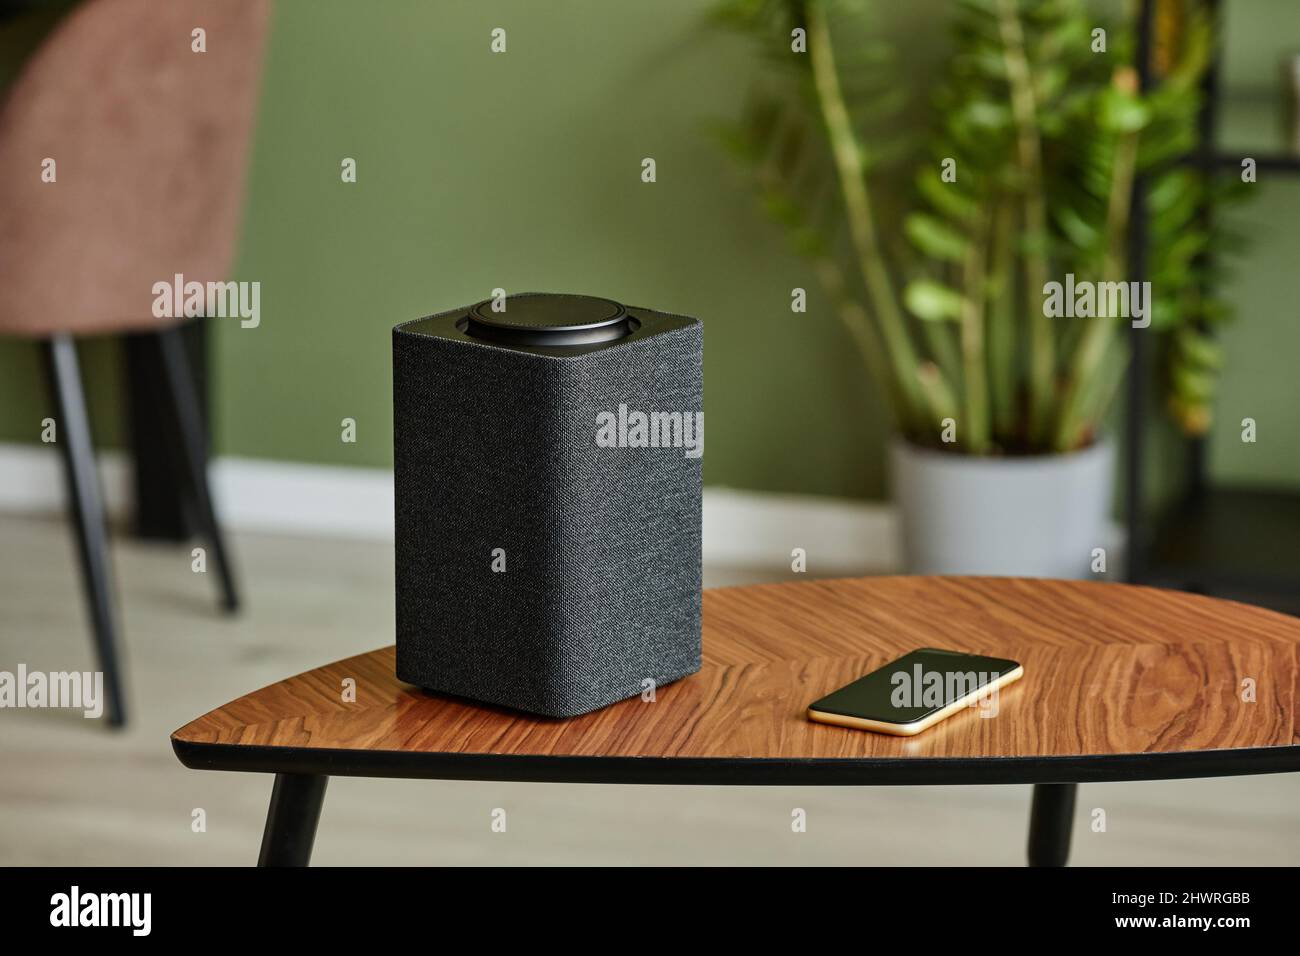 Minimales Hintergrundbild von Smart Speaker mit Home AI-System auf Holztisch gegen grüne Wand, Kopierplatz Stockfoto